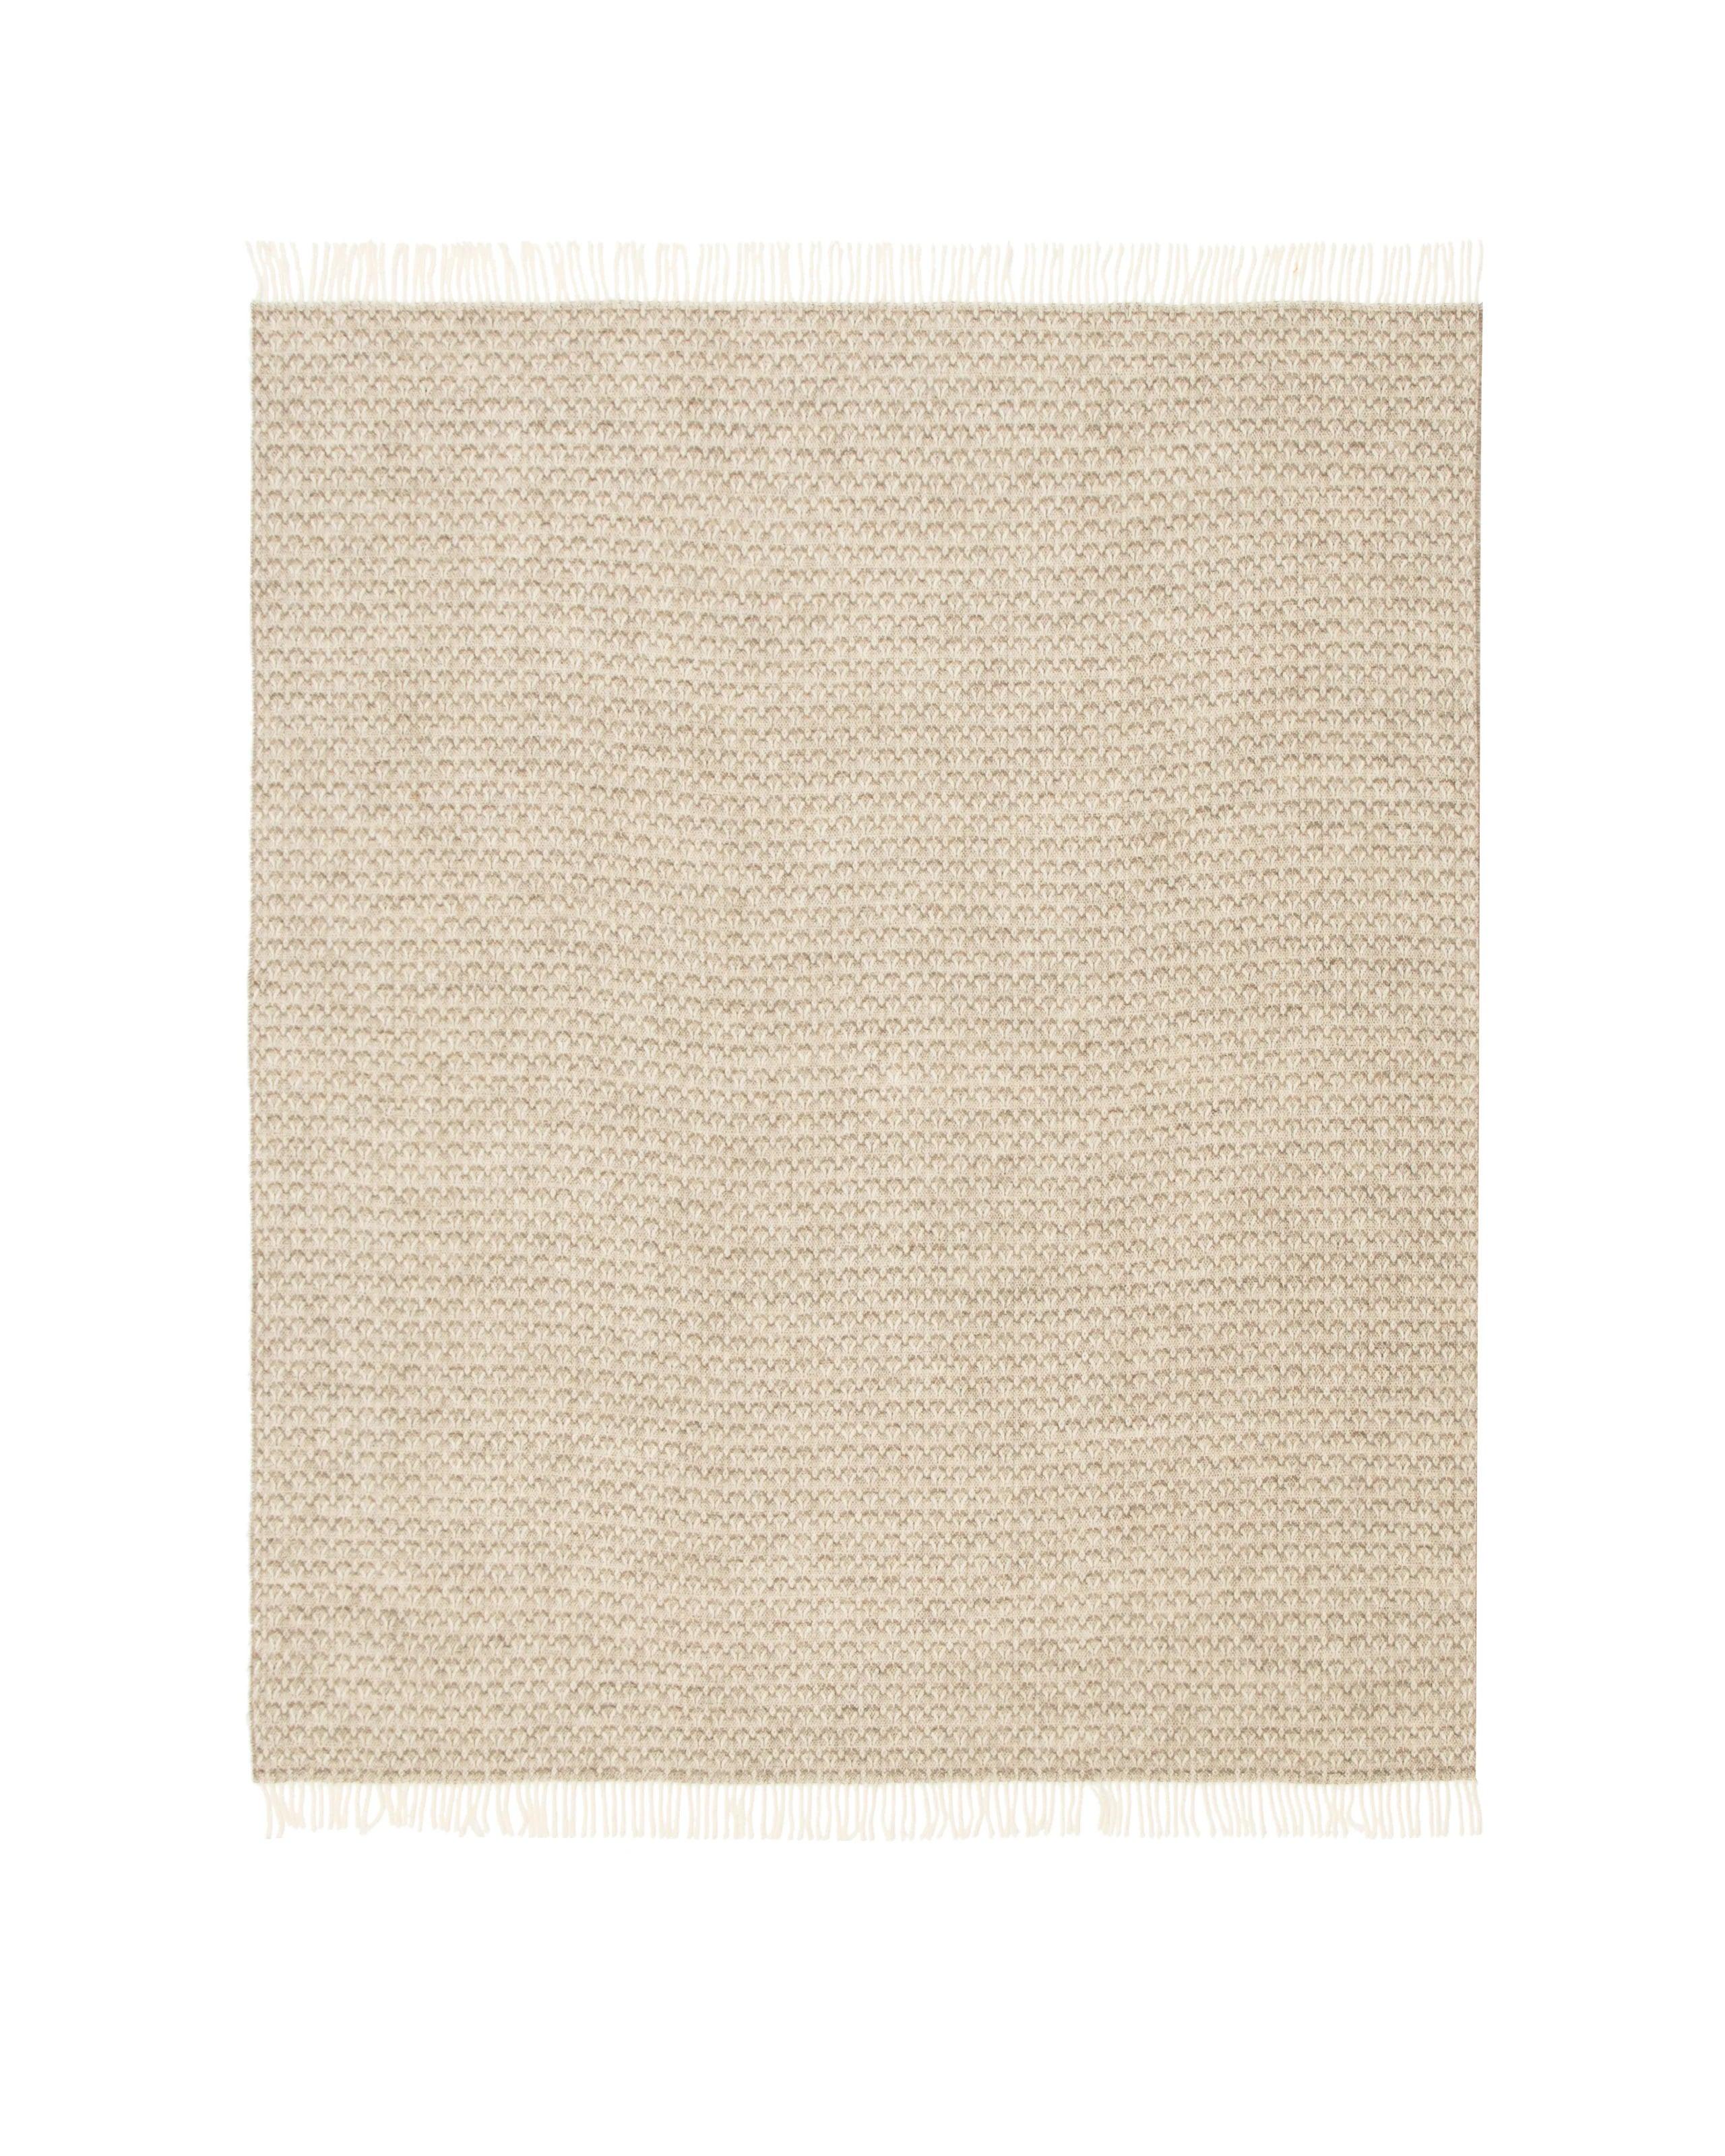 Braies T Virgin Wool Plaid Throw - Elegant Linen